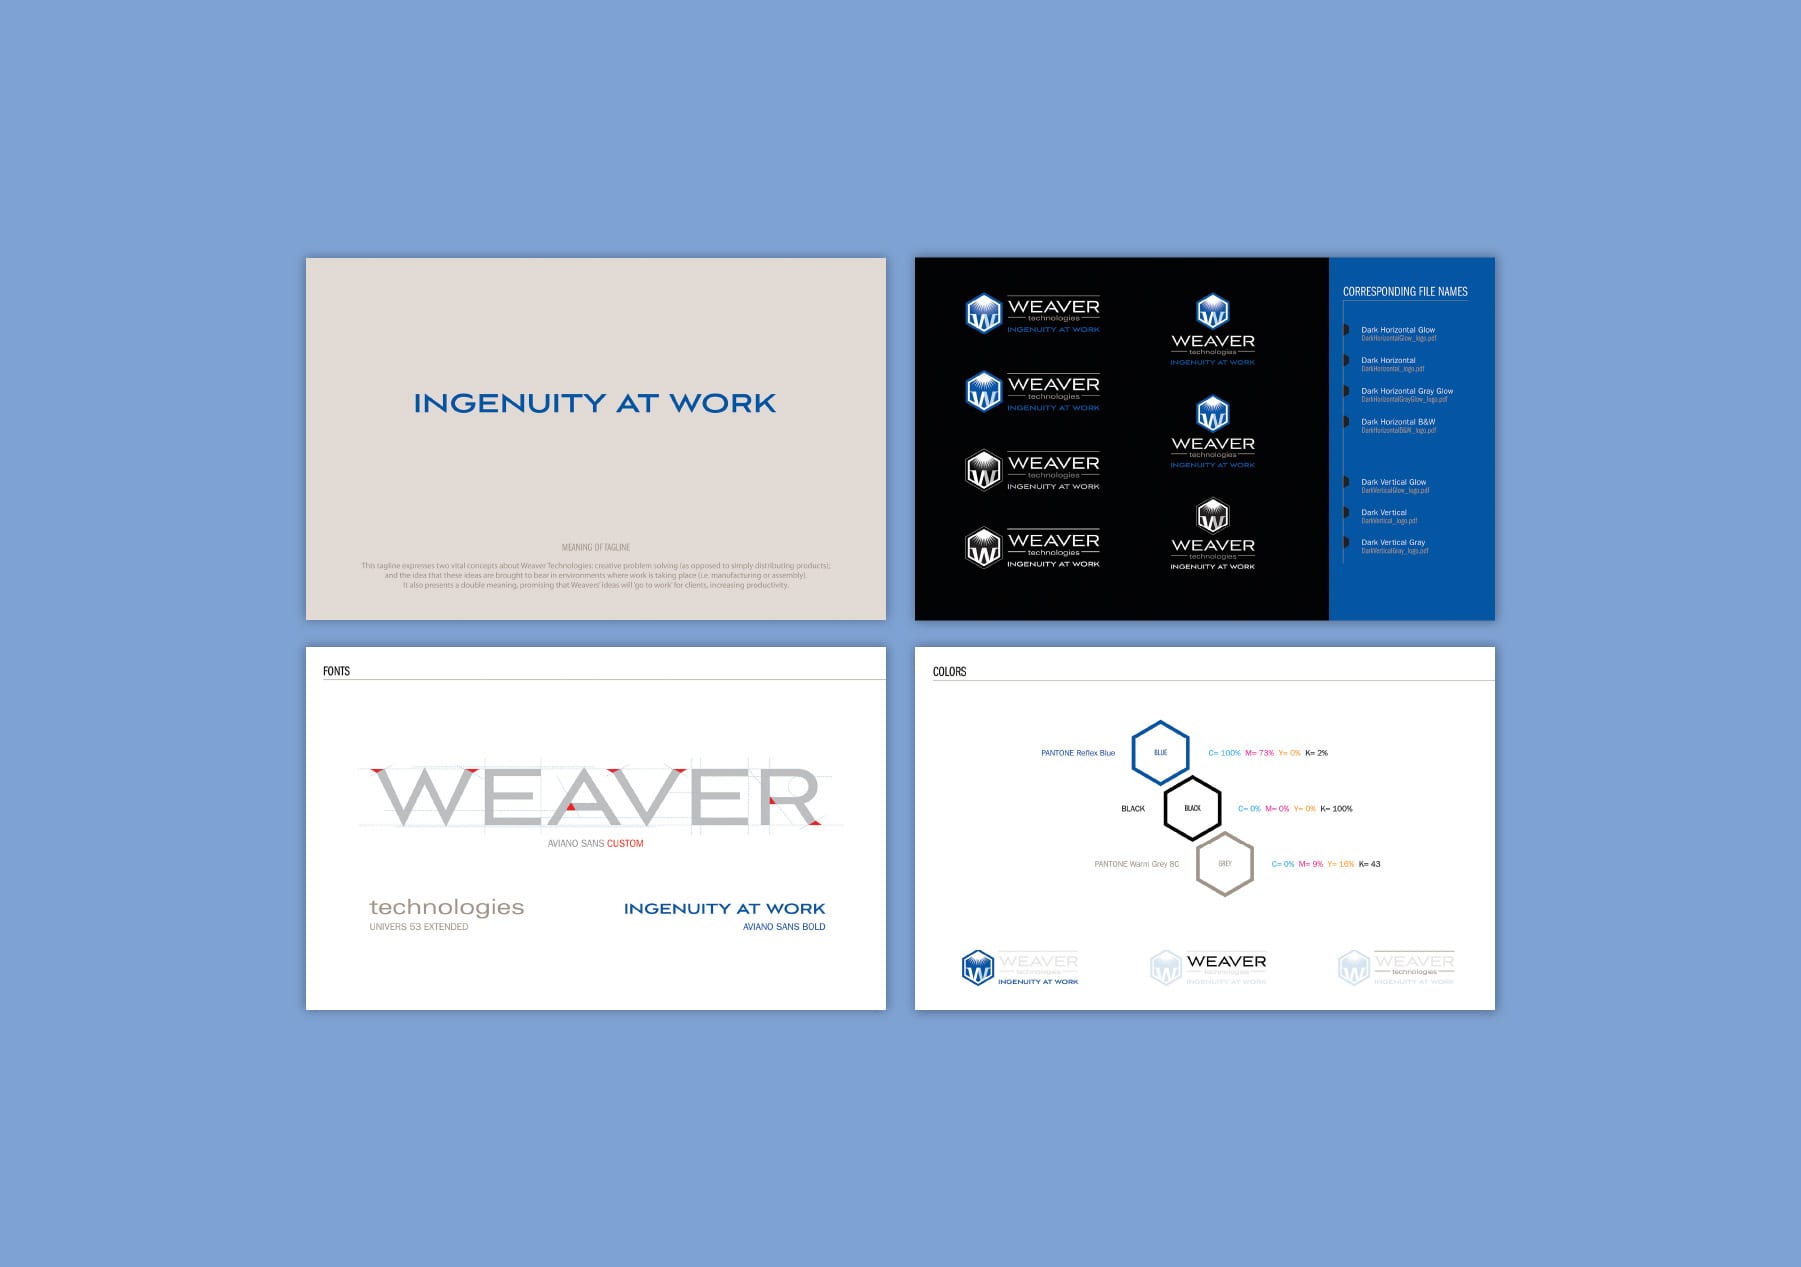 Weaver brand standards guide